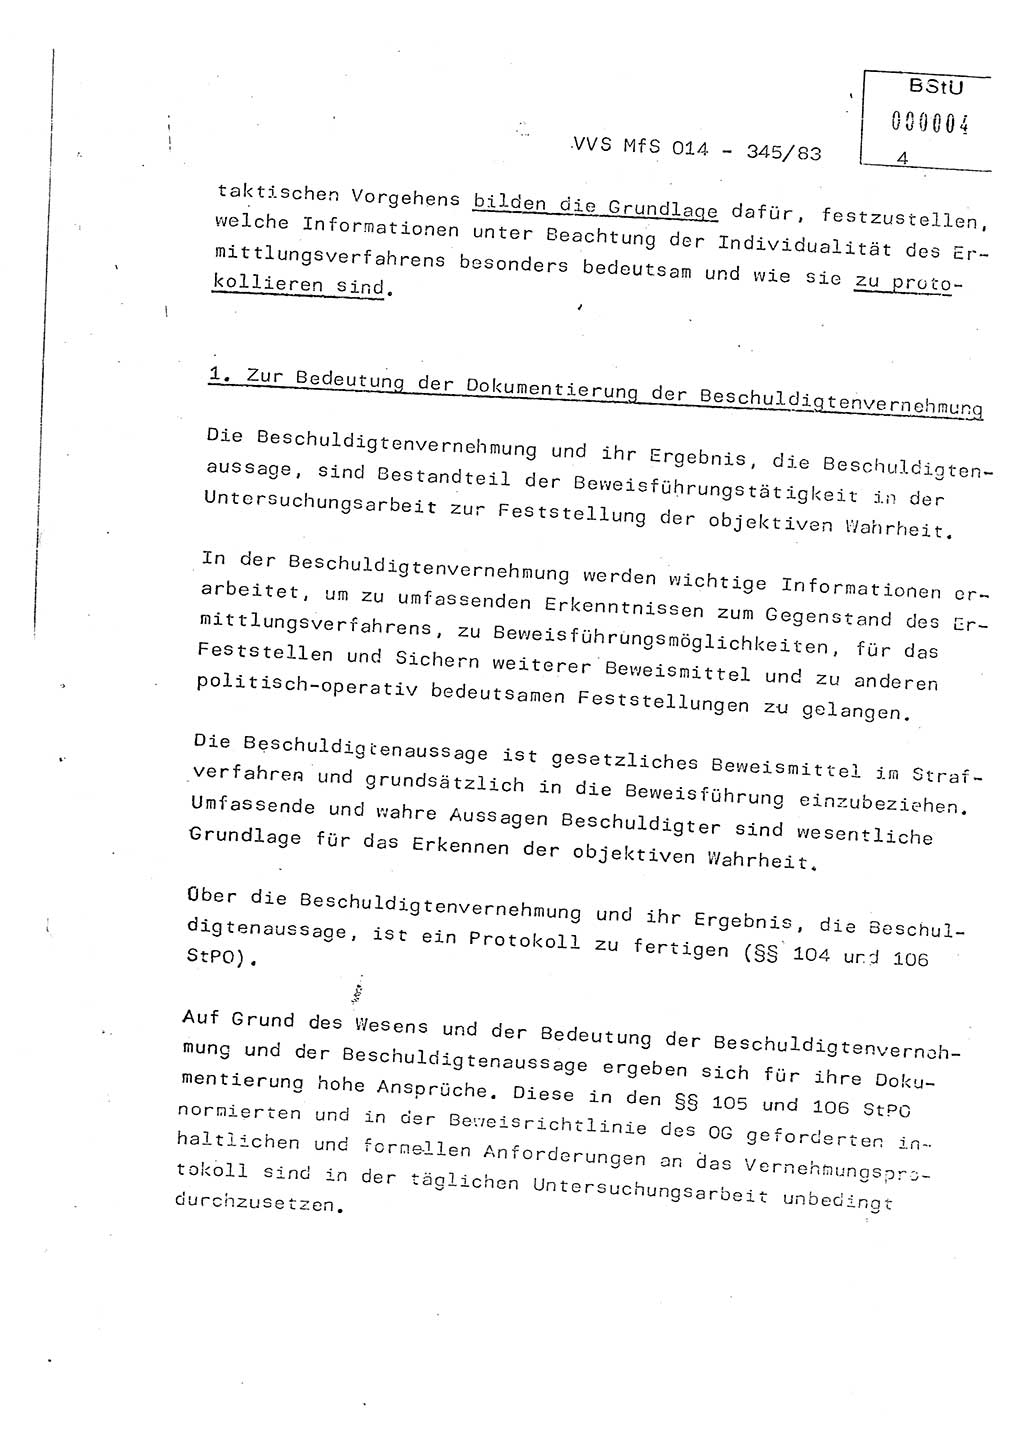 Lektion Ministerium für Staatssicherheit (MfS) [Deutsche Demokratische Republik (DDR)], Hauptabteilung (HA) Ⅸ, Vertrauliche Verschlußsache (VVS) o014-345/83, Berlin 1983, Seite 4 (Lekt. MfS DDR HA Ⅸ VVS o014-345/83 1983, S. 4)